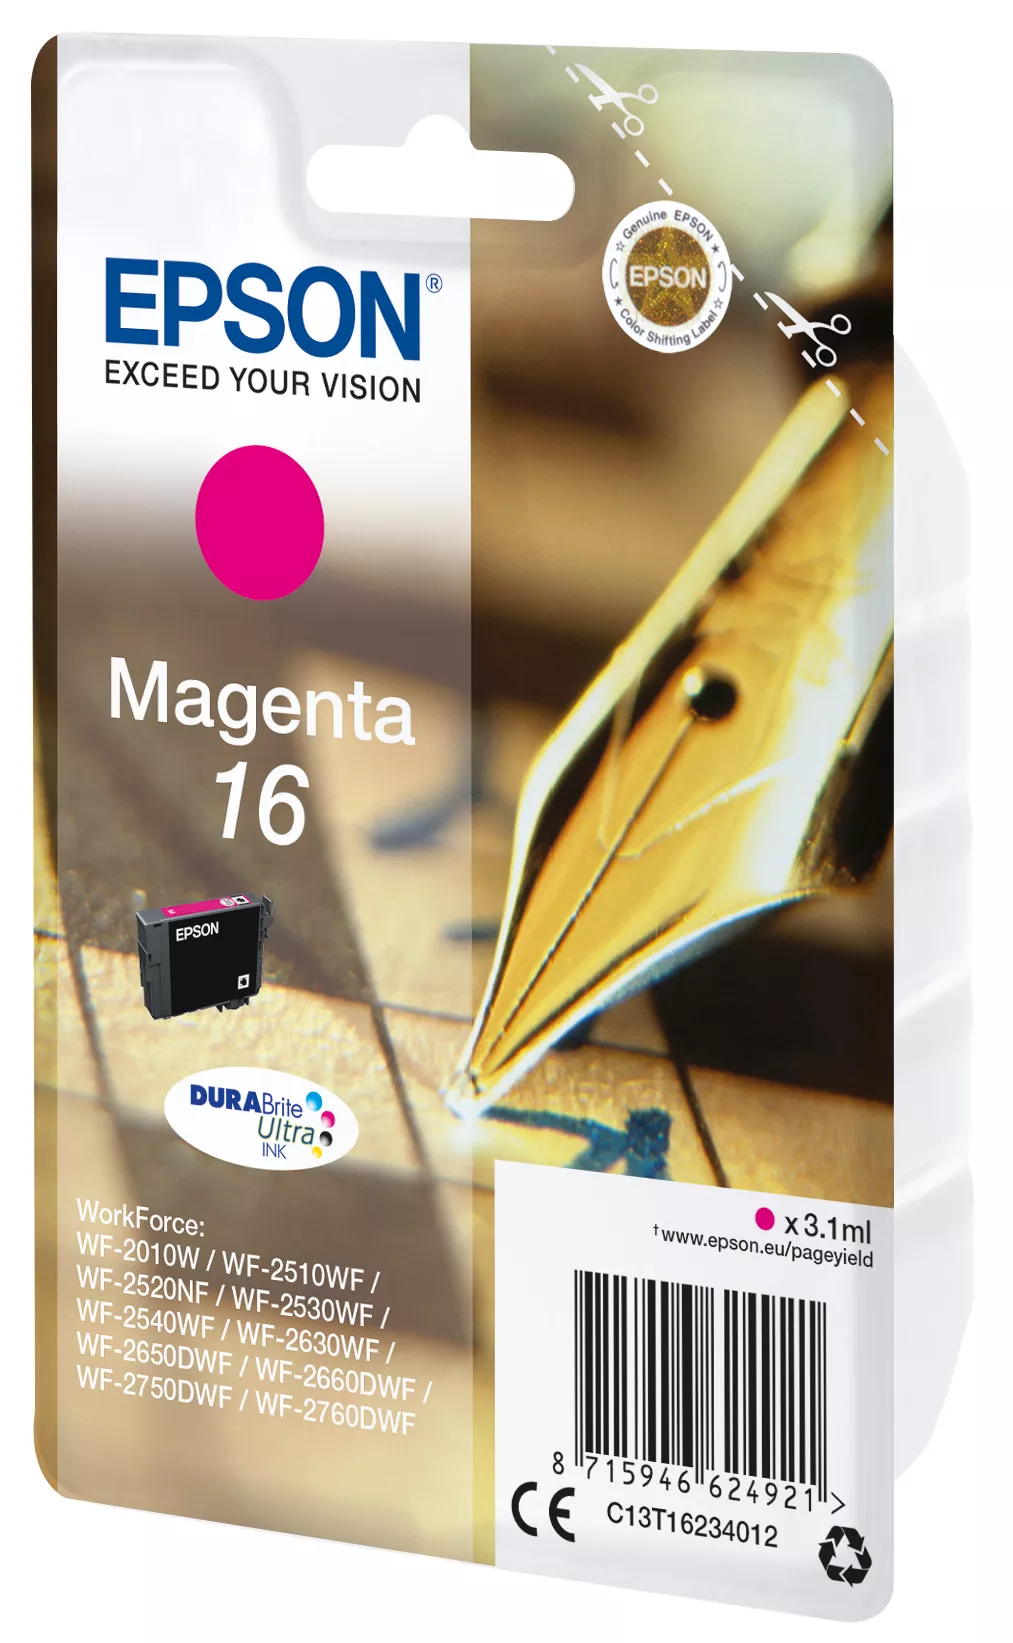 Vente EPSON 16 cartouche encre magenta capacité standard 3.1ml Epson au meilleur prix - visuel 2